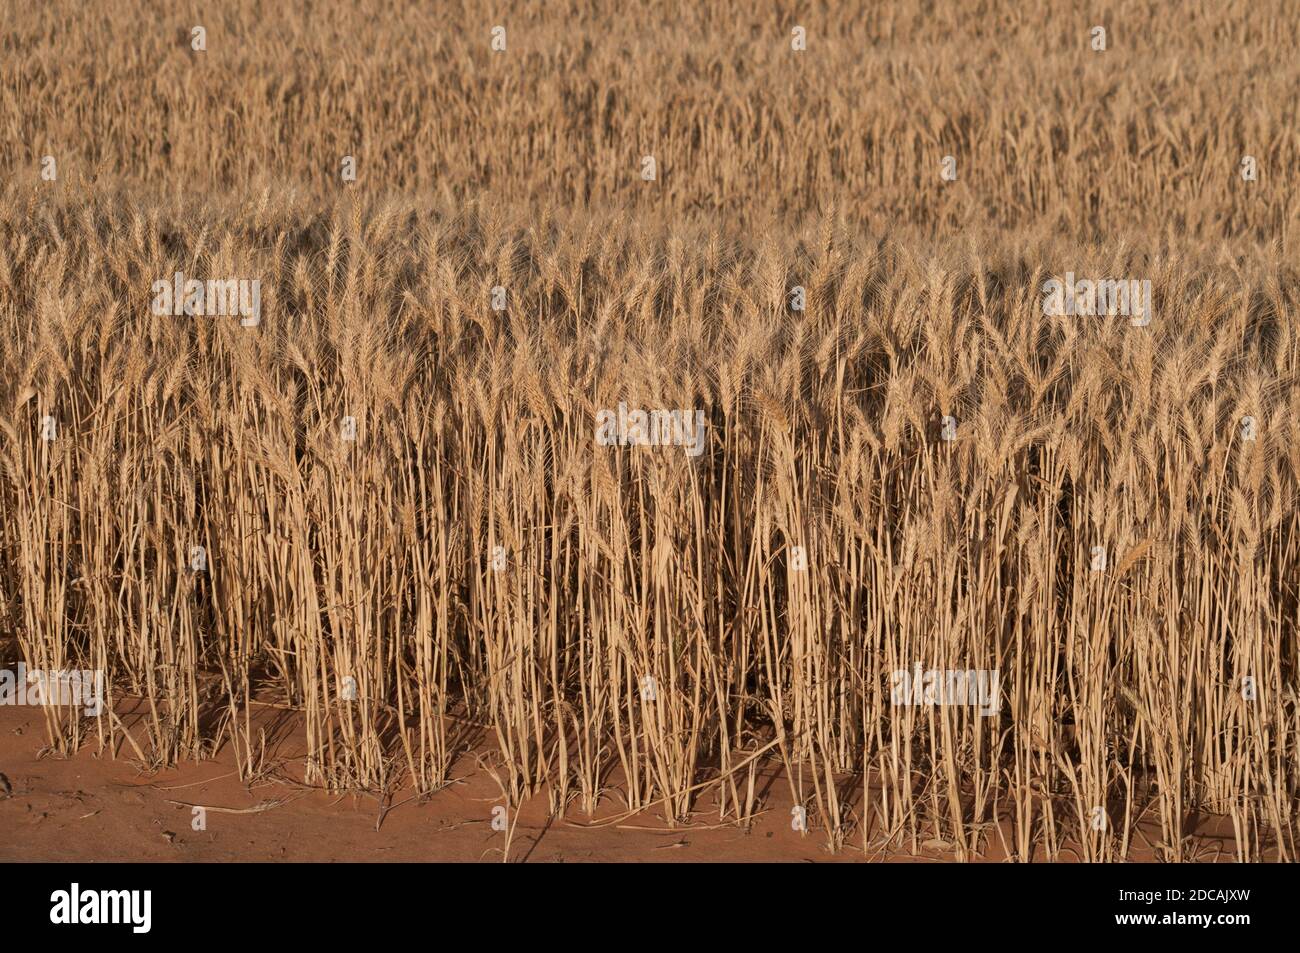 Un raccolto di grano paraurti nella regione di Mallee, Victoria, Australia, sarà pronto per la raccolta nel dicembre 2020. Foto Stock